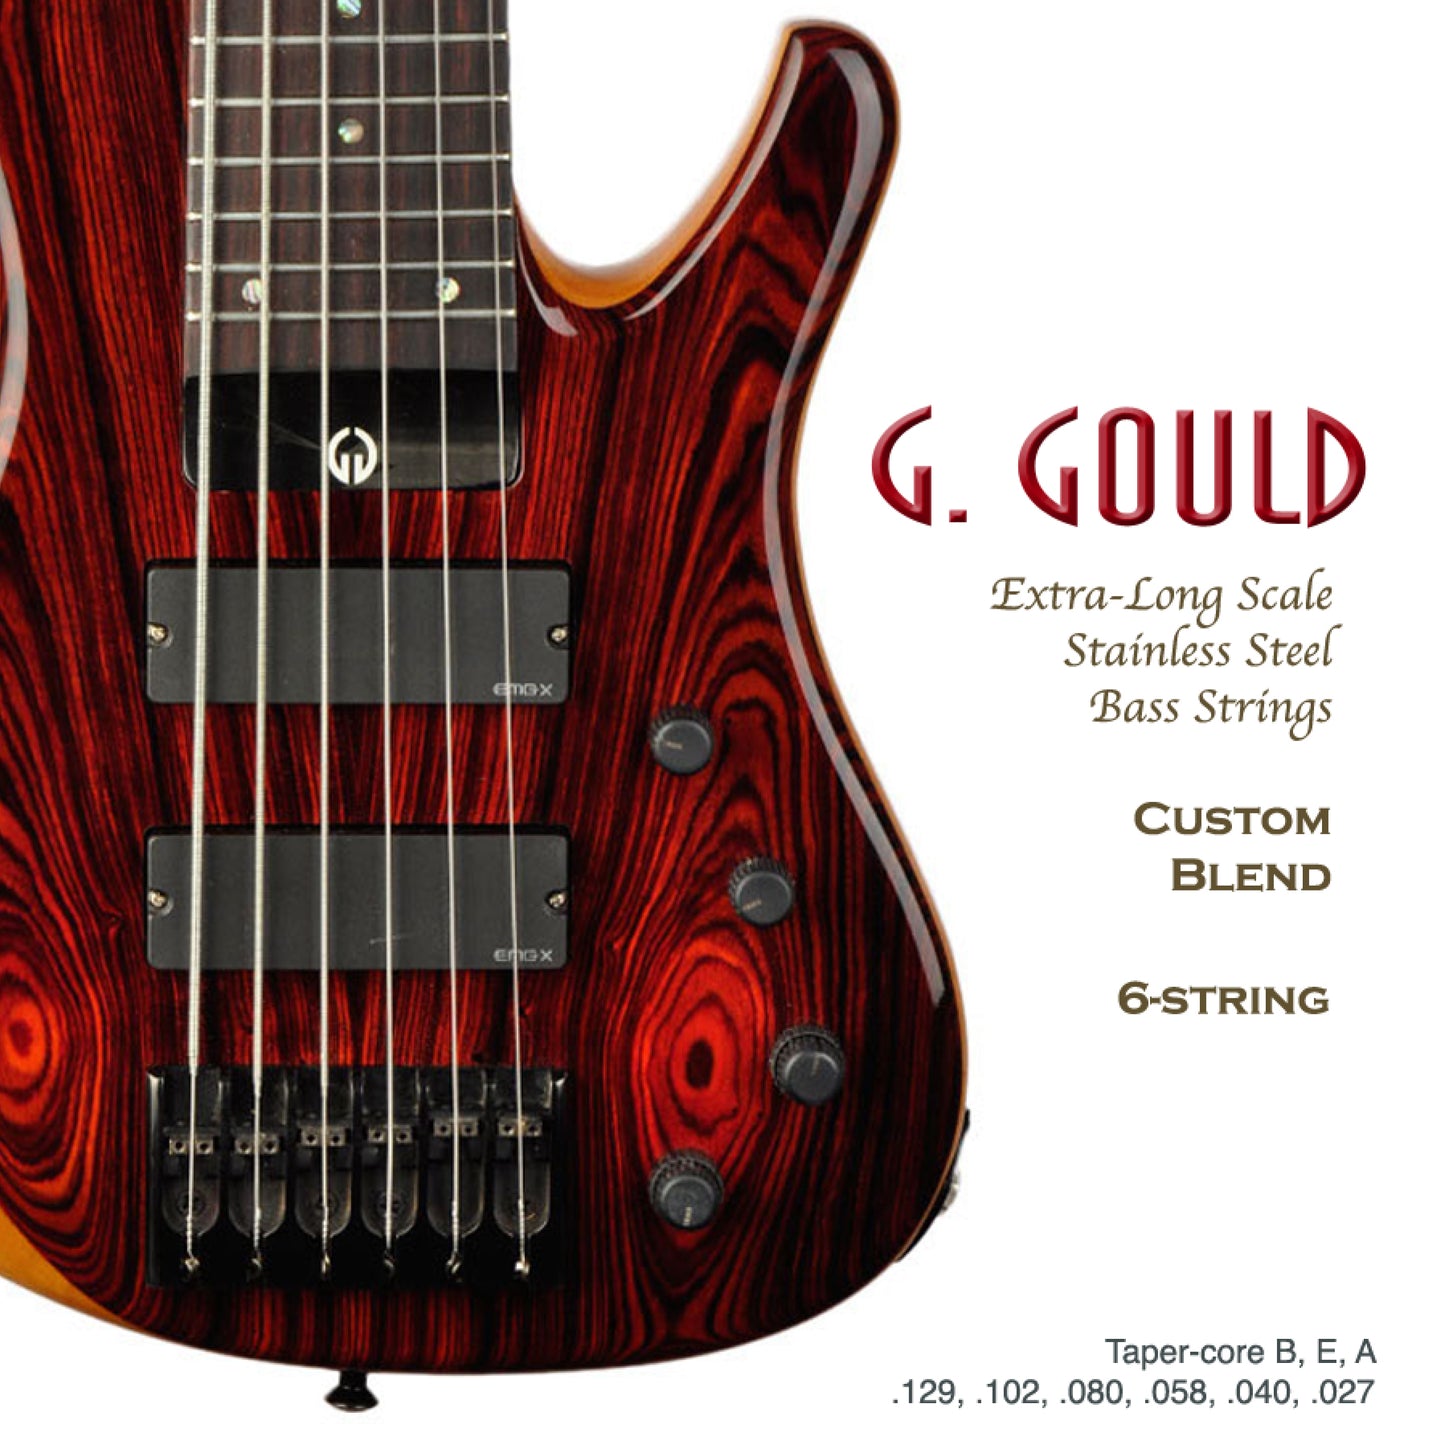 G. Gould Custom Blend Bass Strings, 6-String